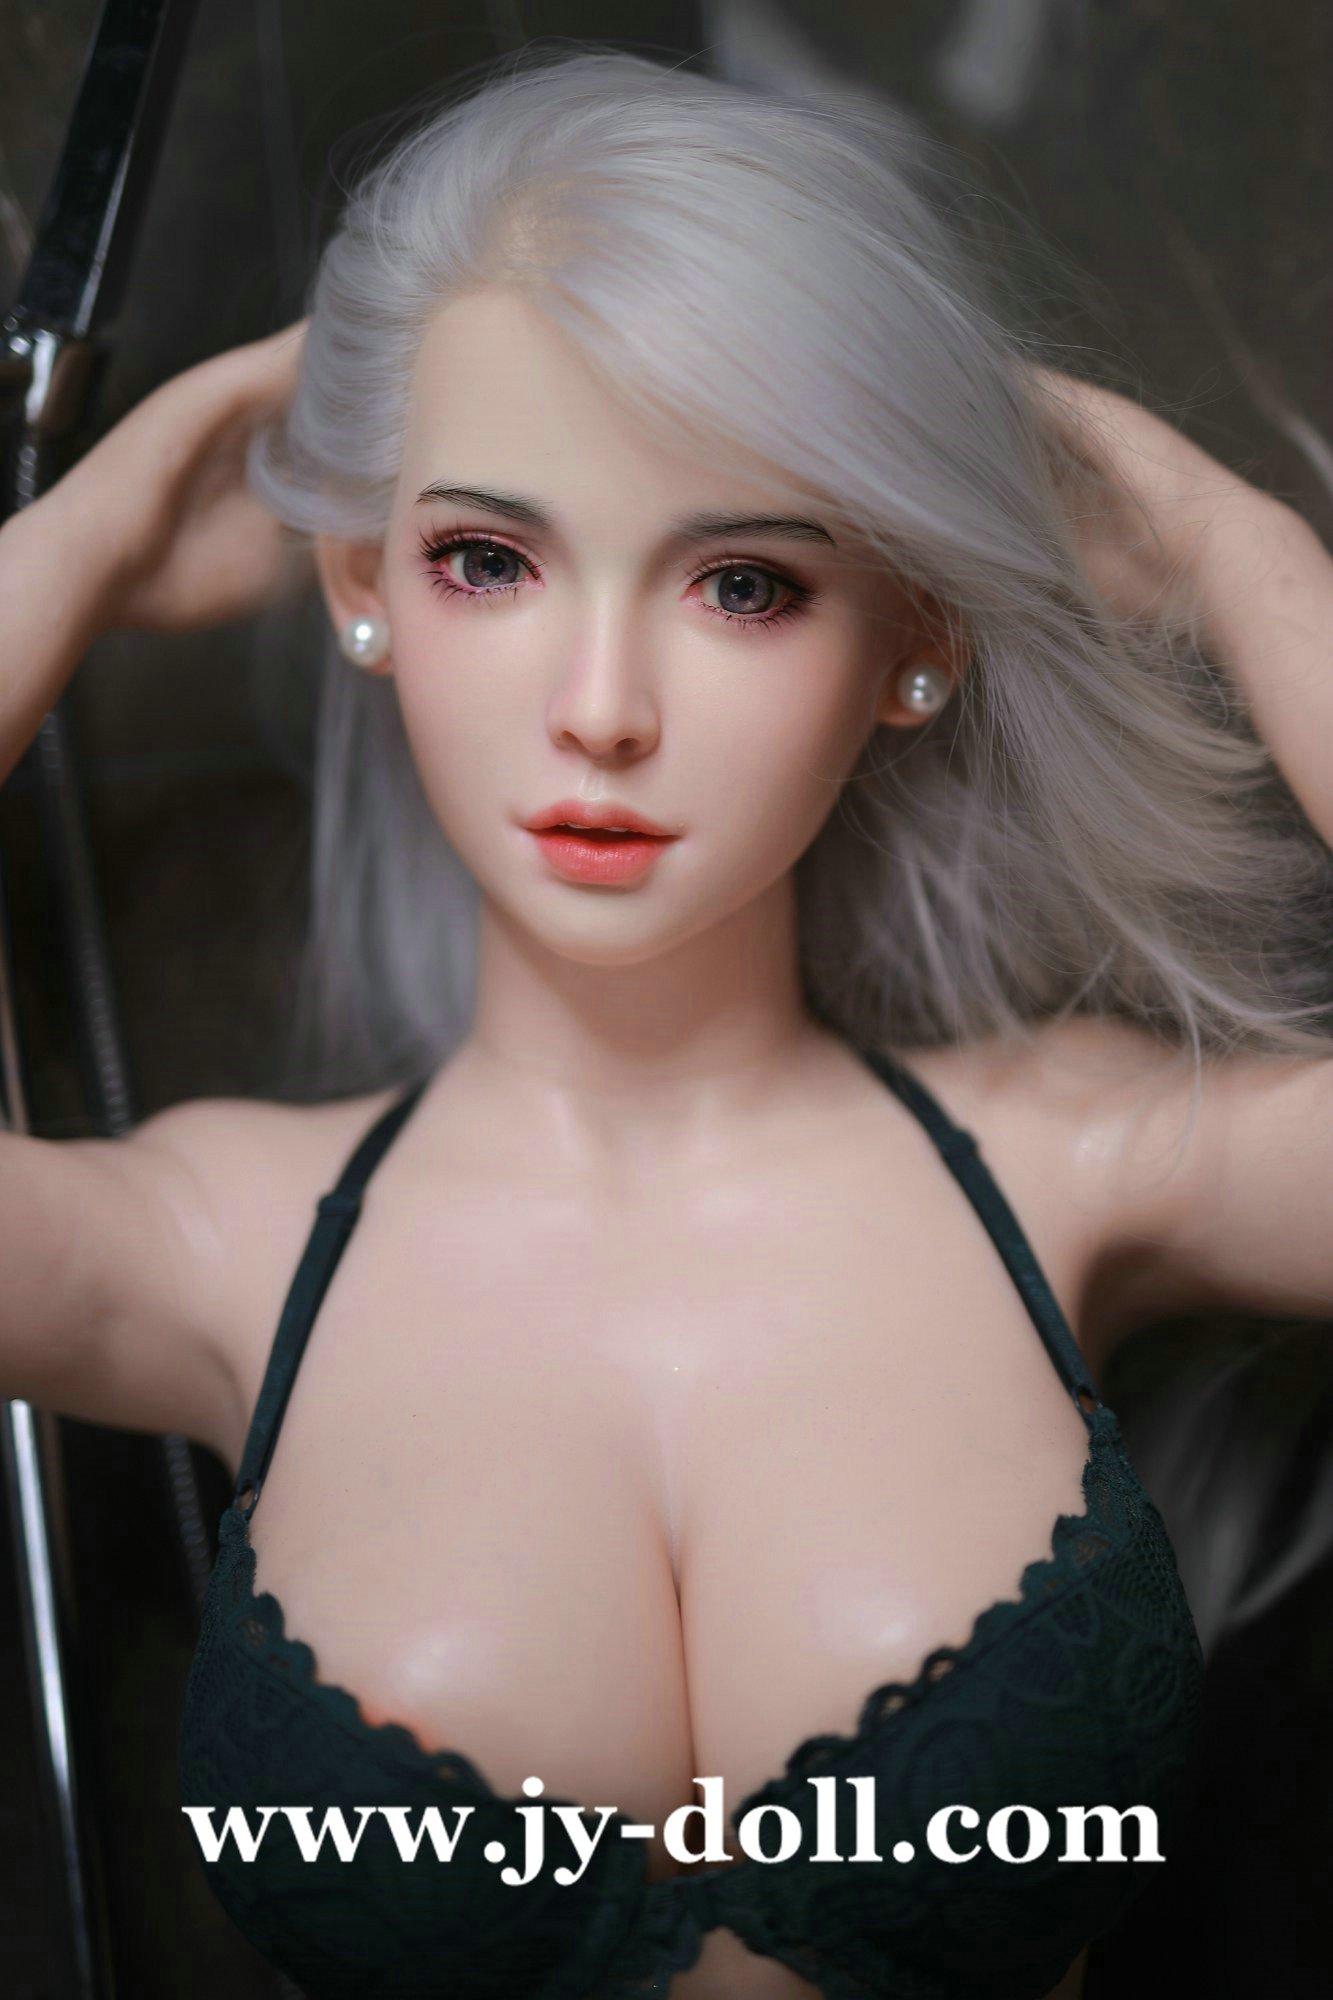 JY Doll 163cm full silicone doll Nancy